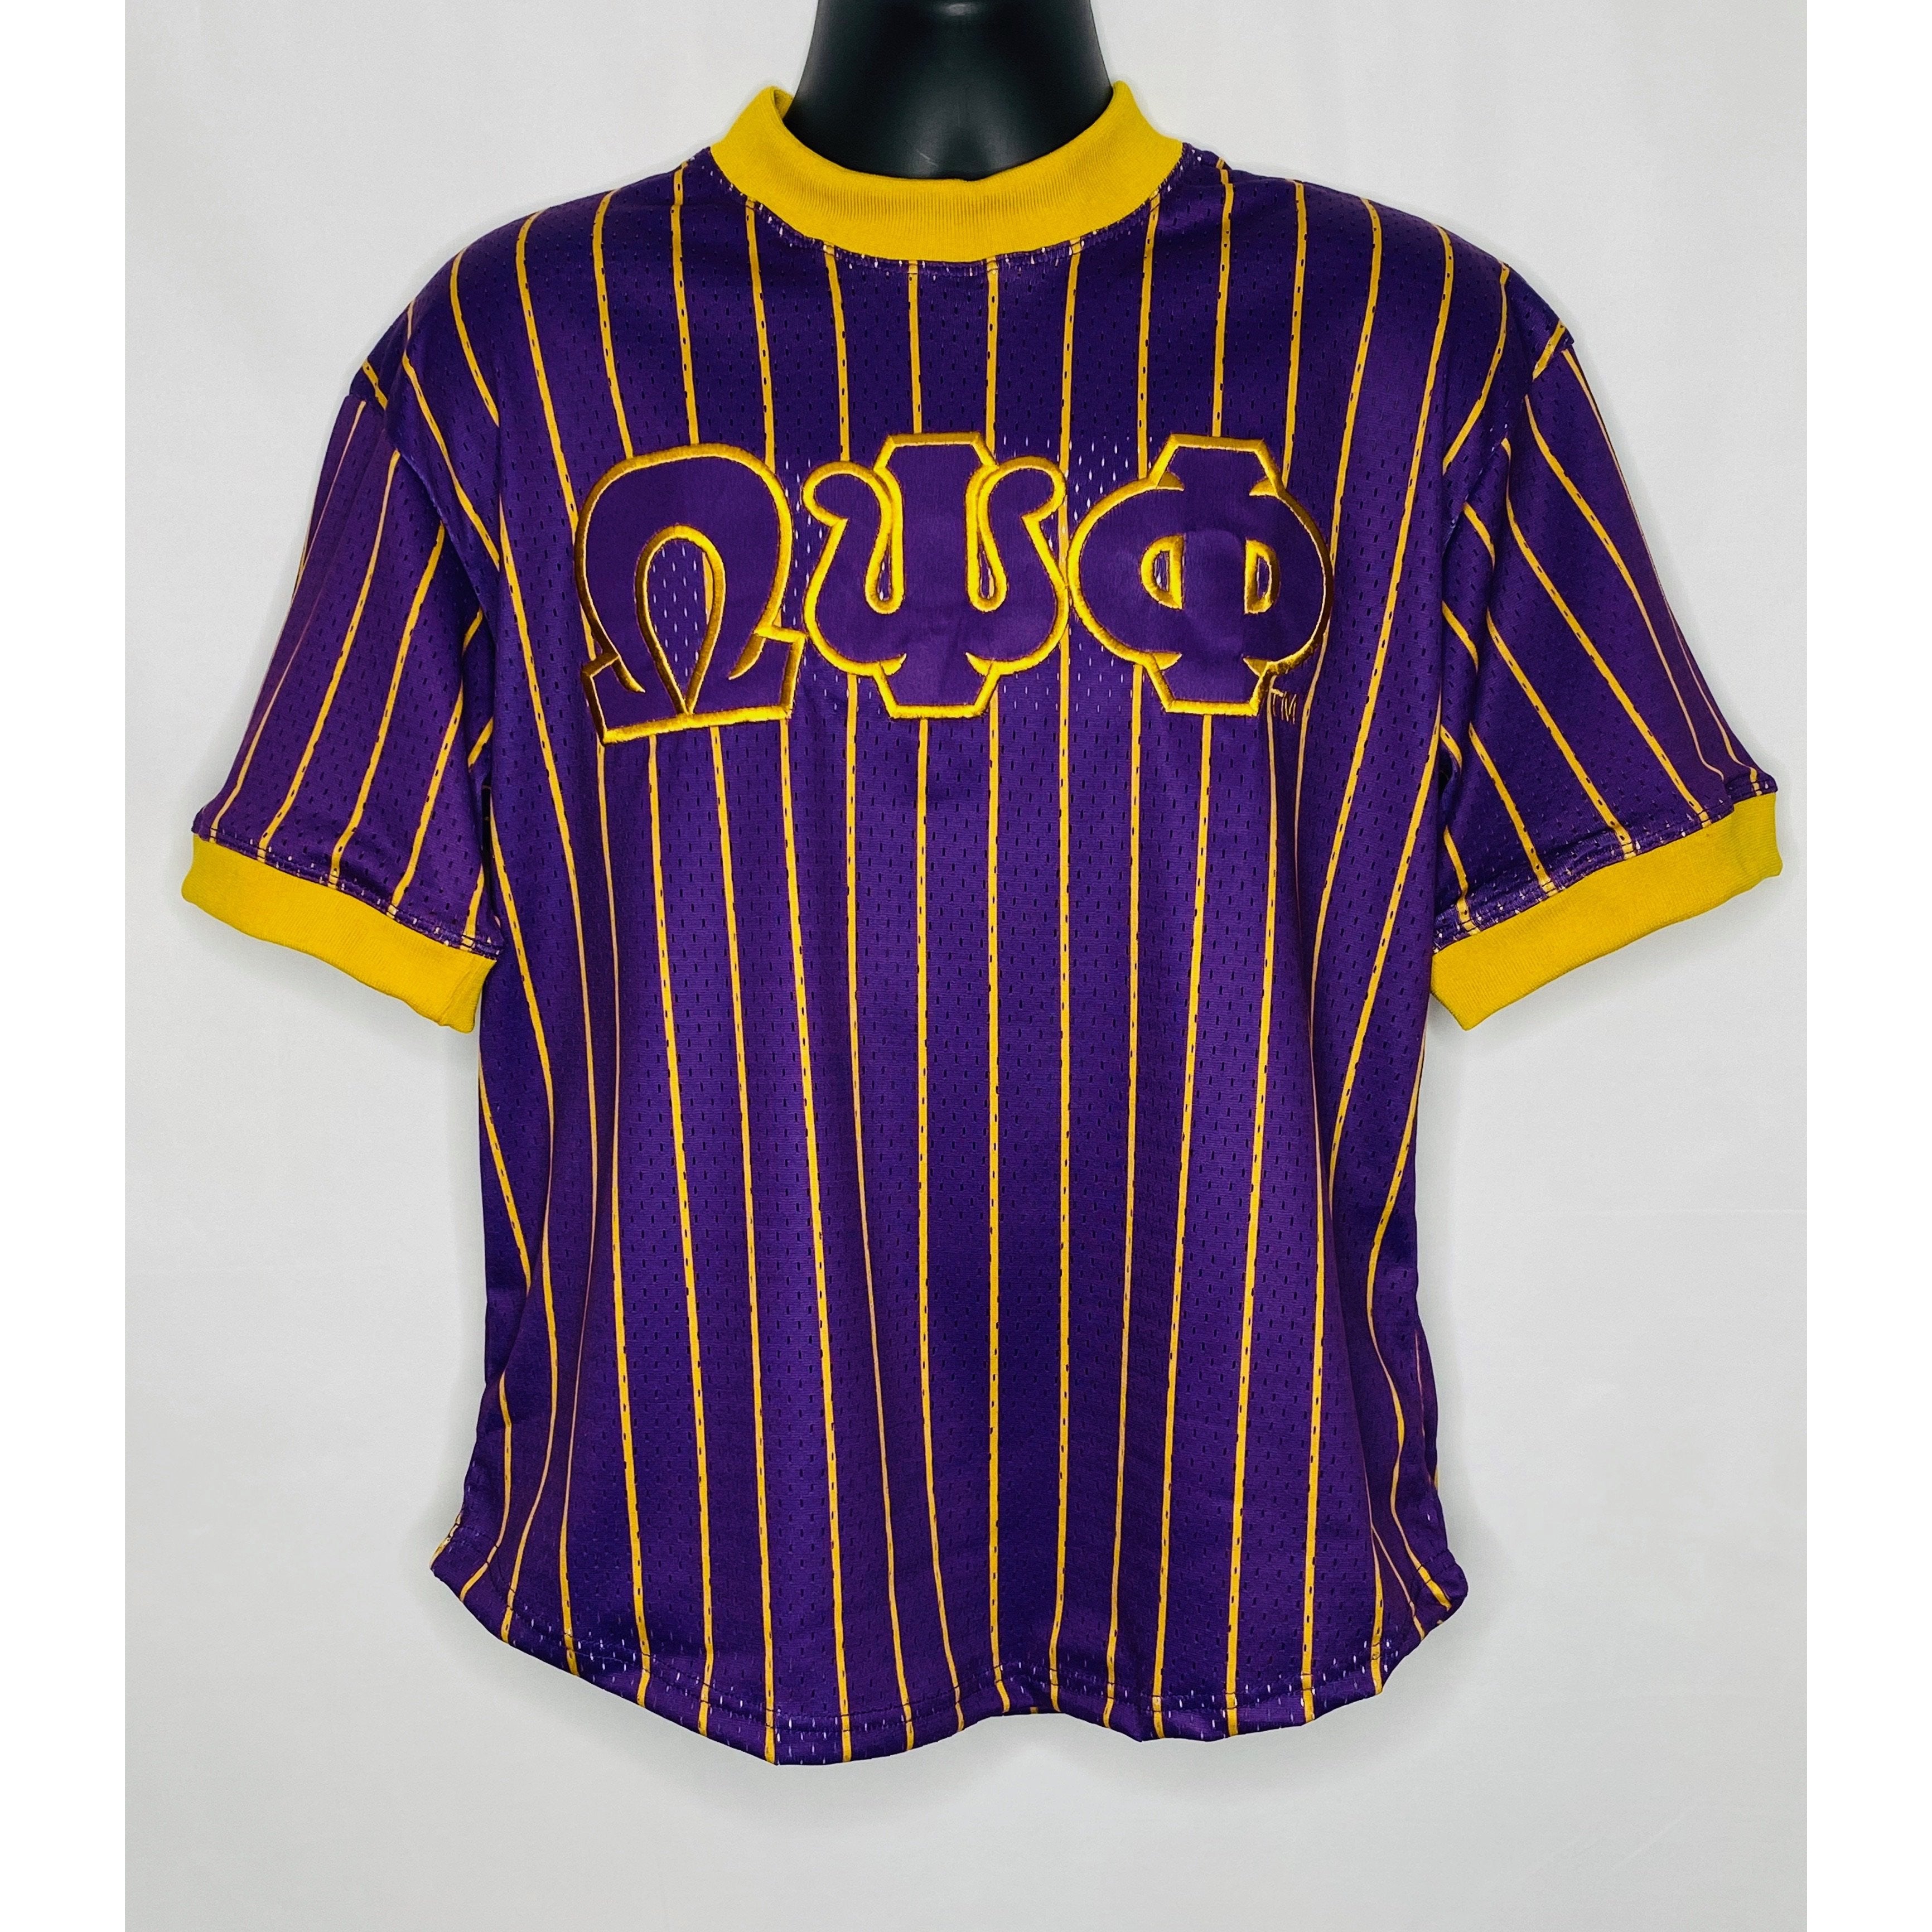 purple pinstripe baseball jersey